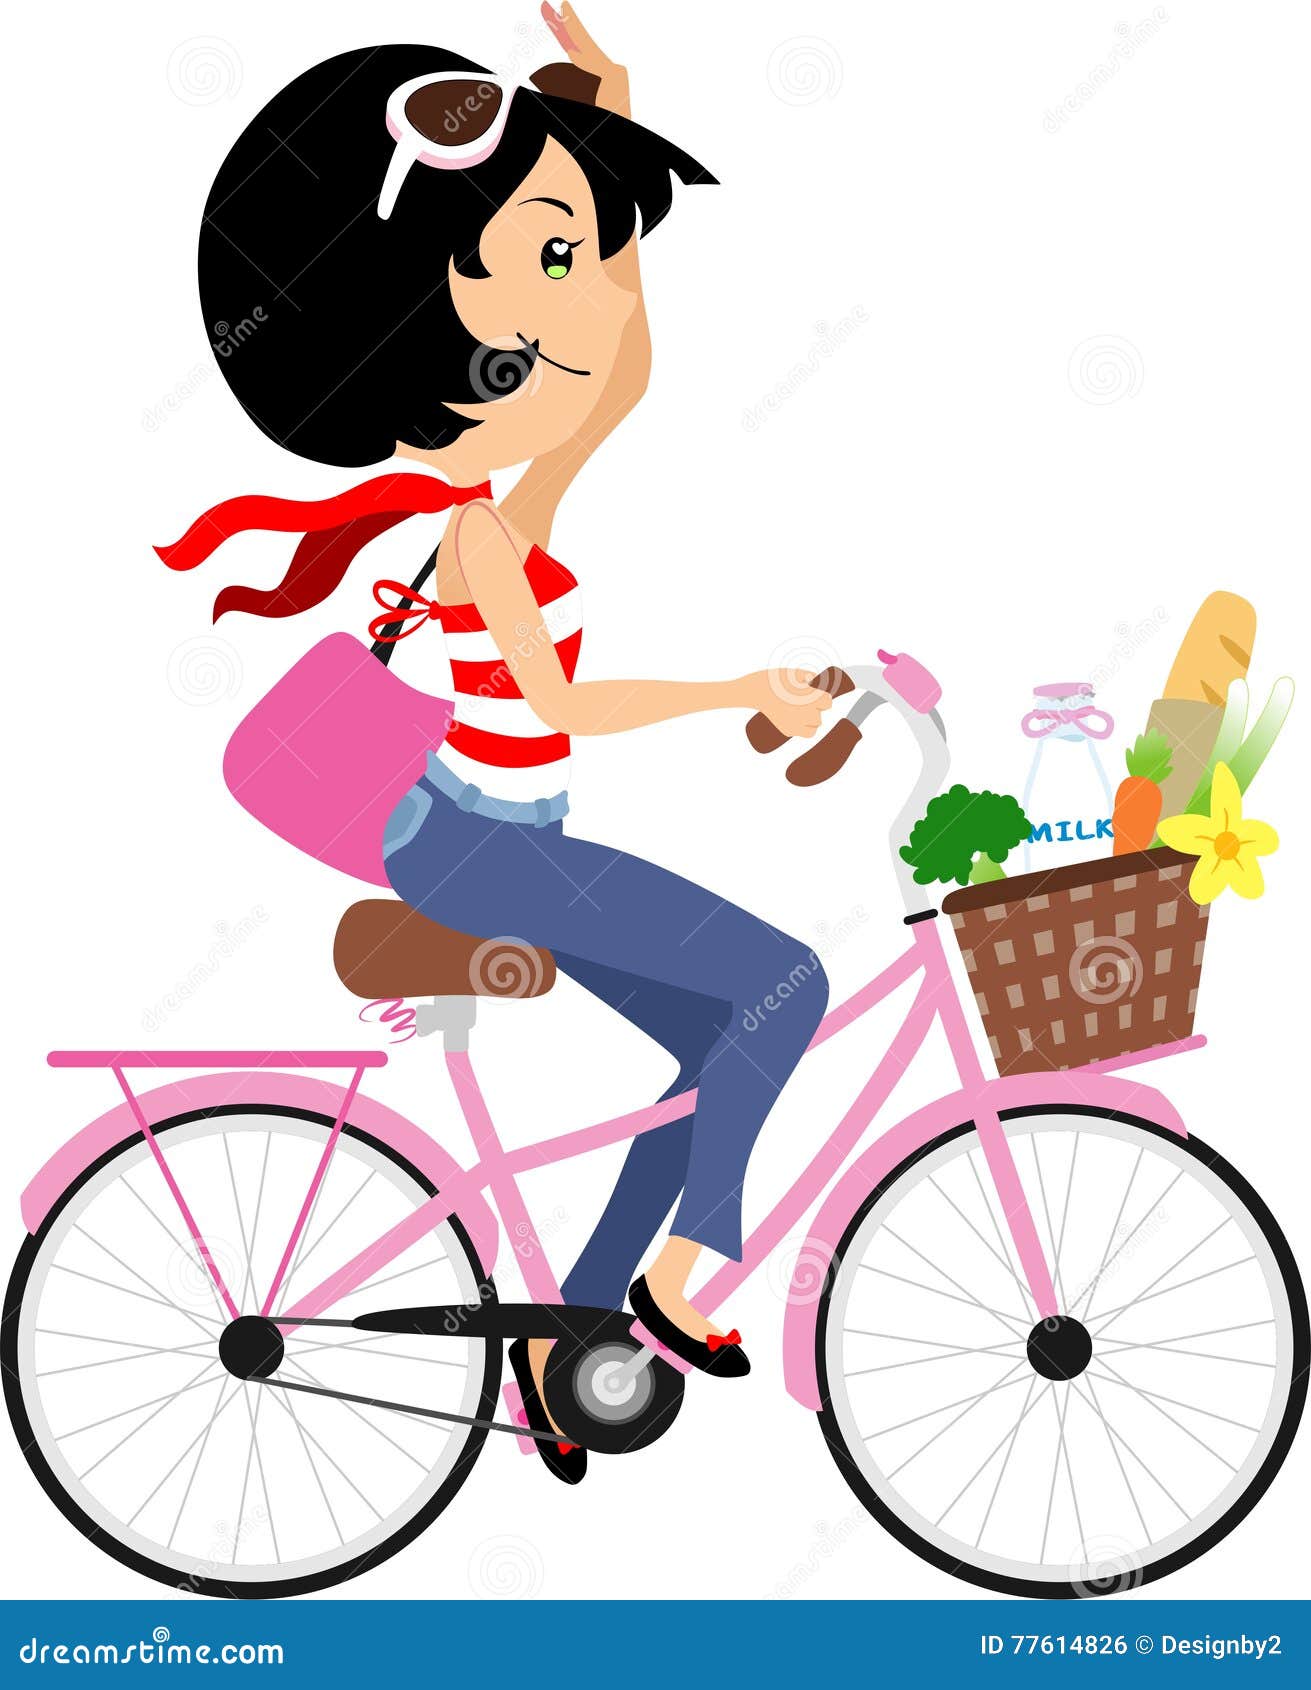 girl on bike clipart - photo #31